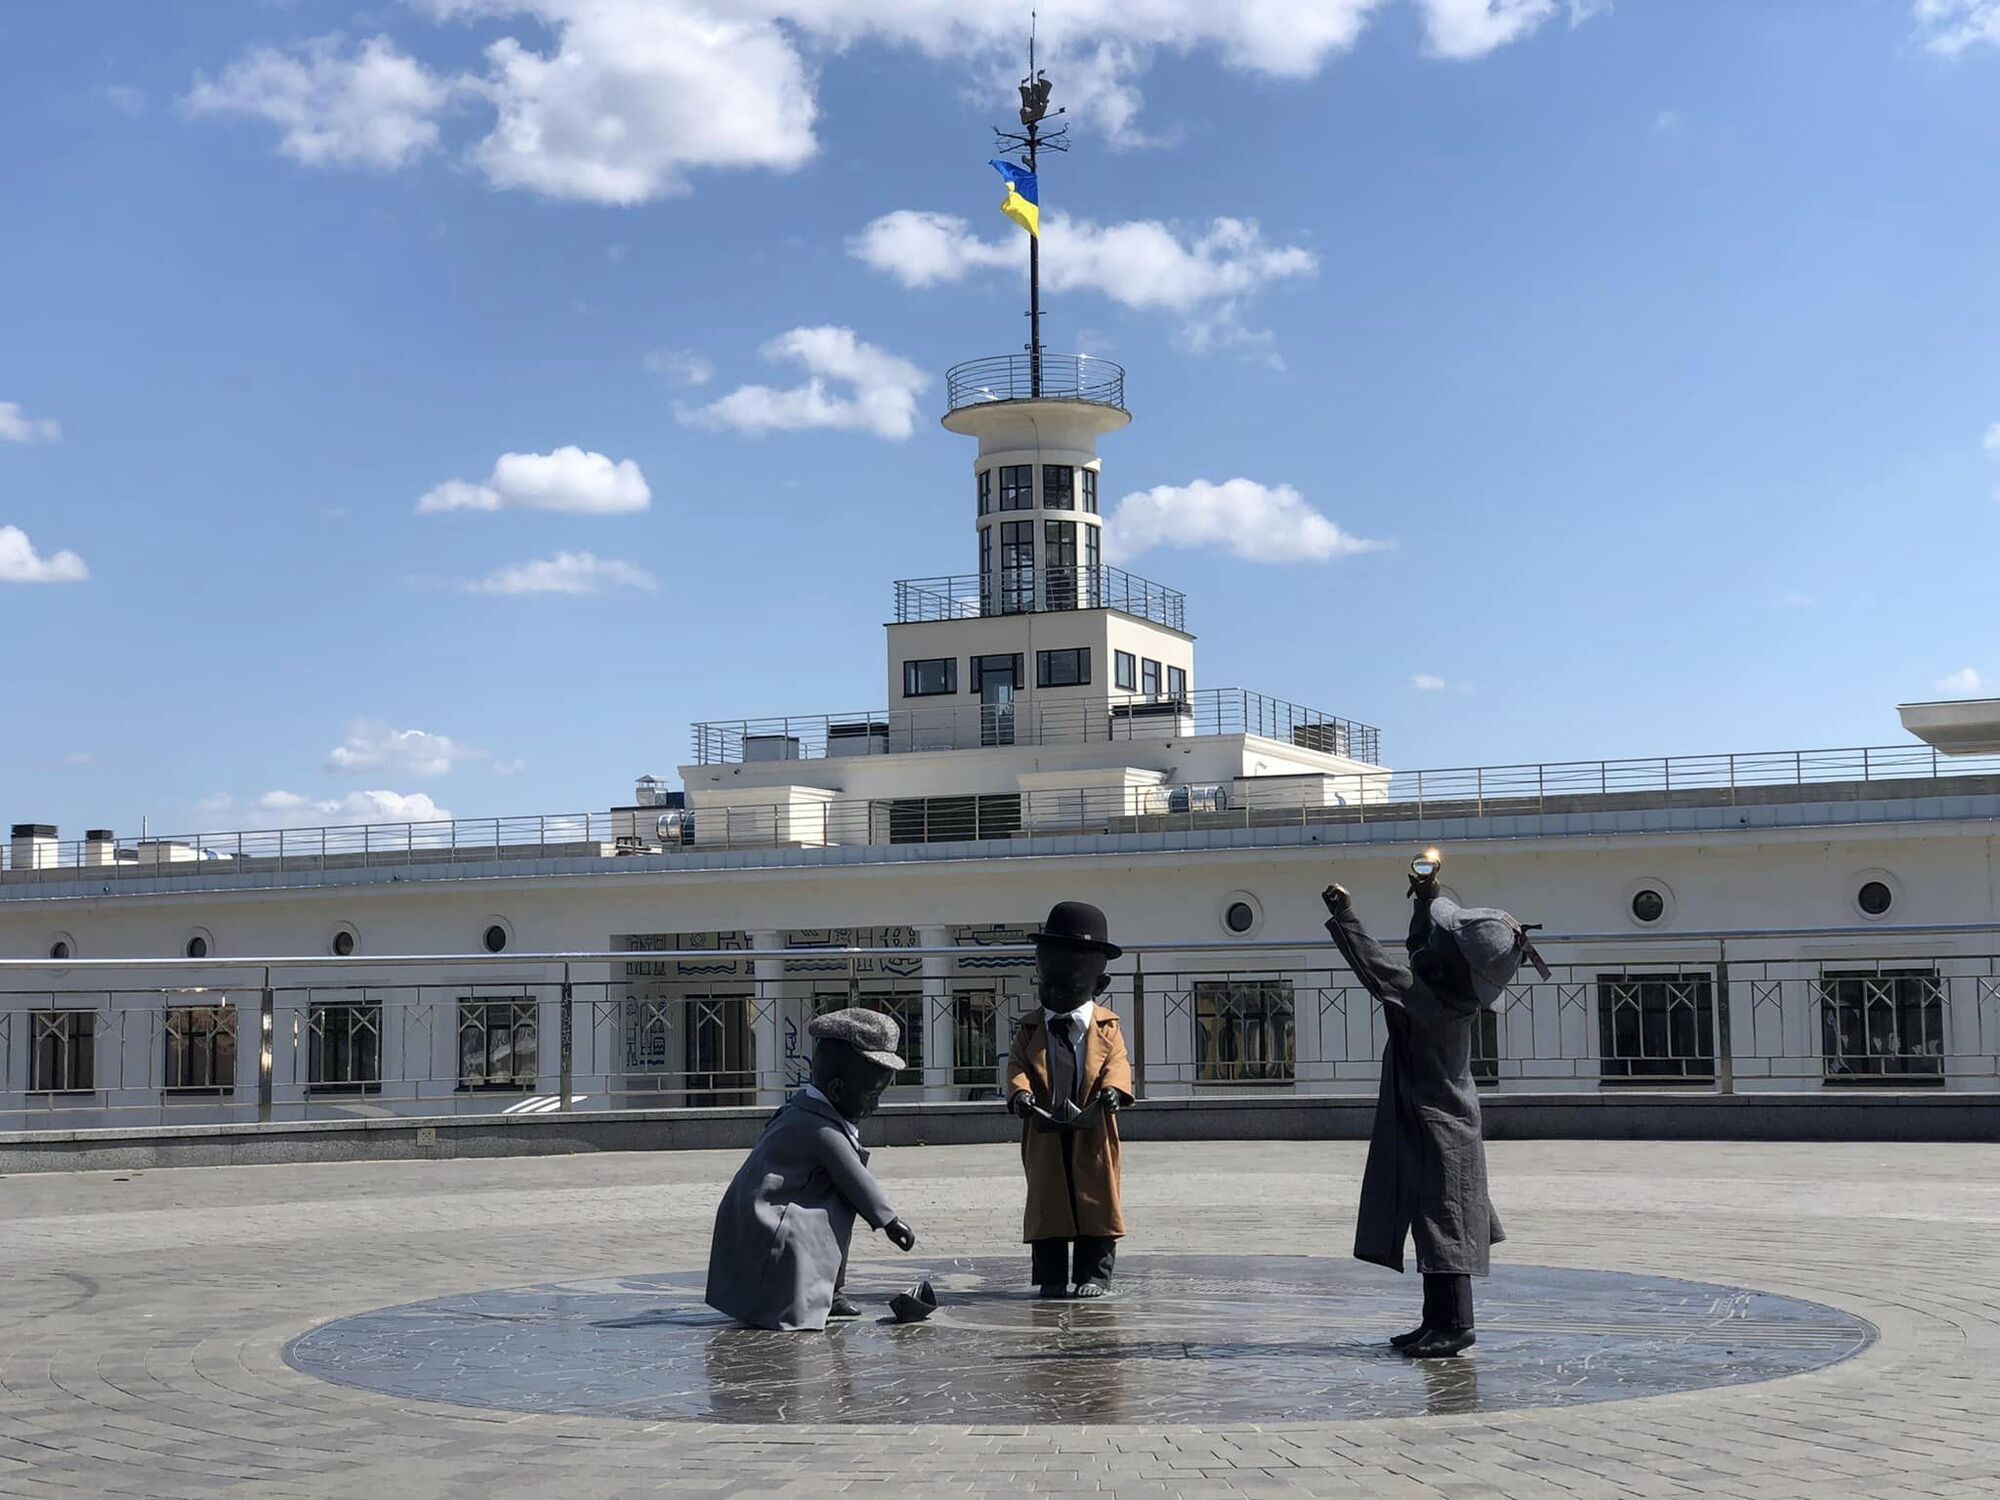 У столиці малюків-засновників Києва переодягли на честь відомих персонажів Артура Конана Дойла. Фото